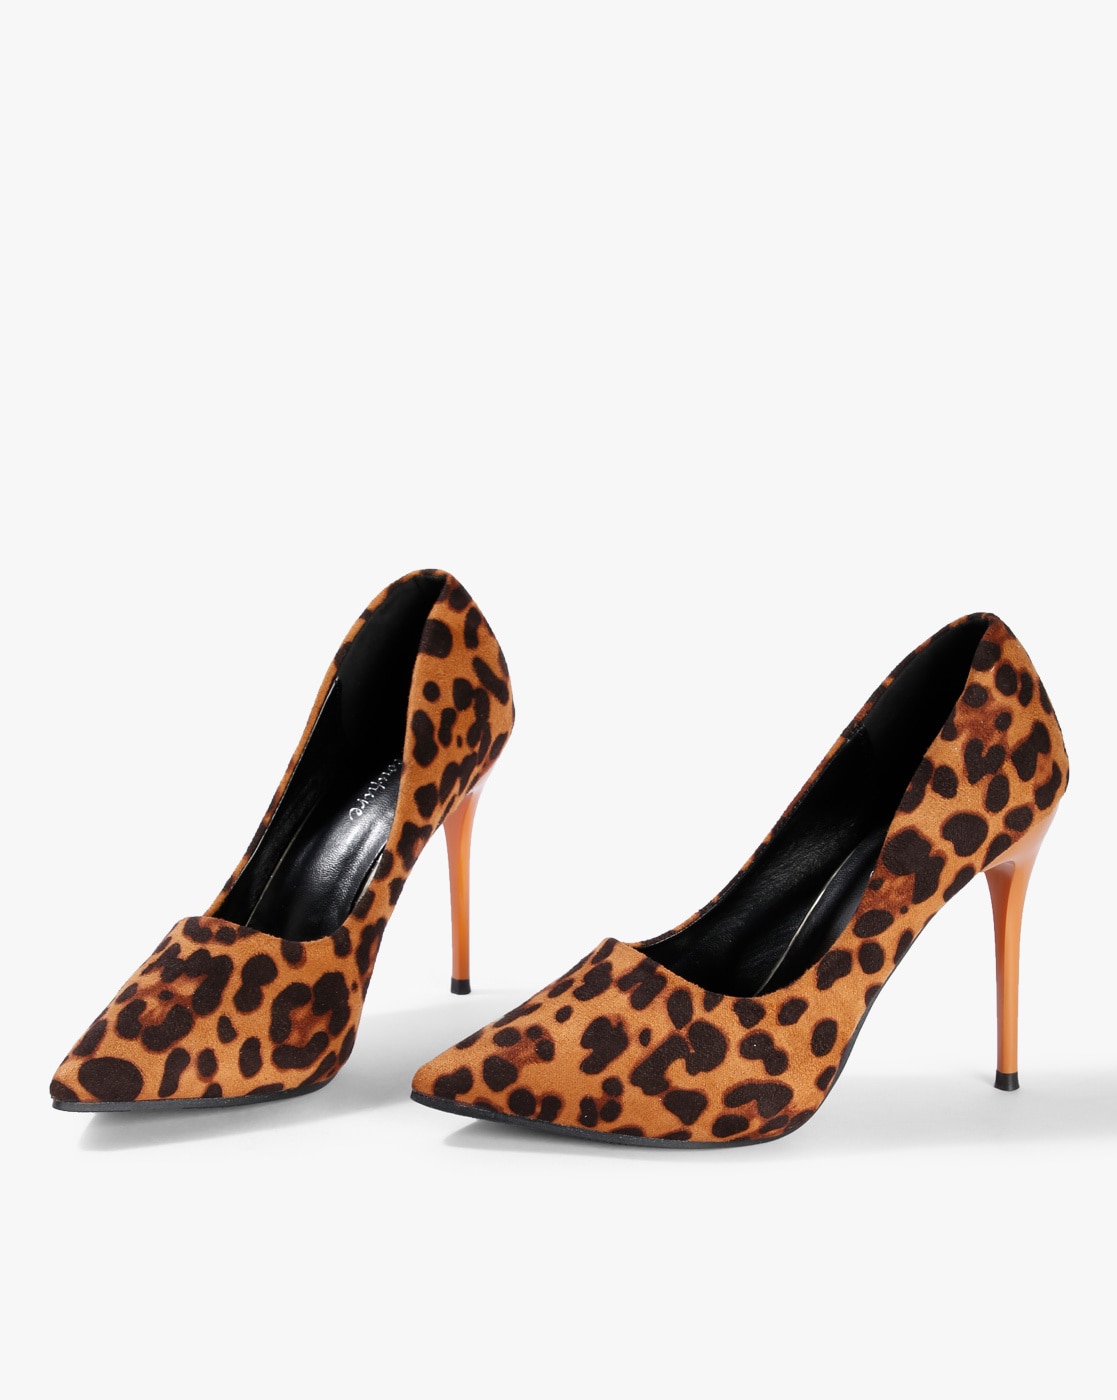 Leopard Shoes Pumps Heel | Leopard Pointed Toe Heels | Leopard High Heel  Shoes - Brand - Aliexpress